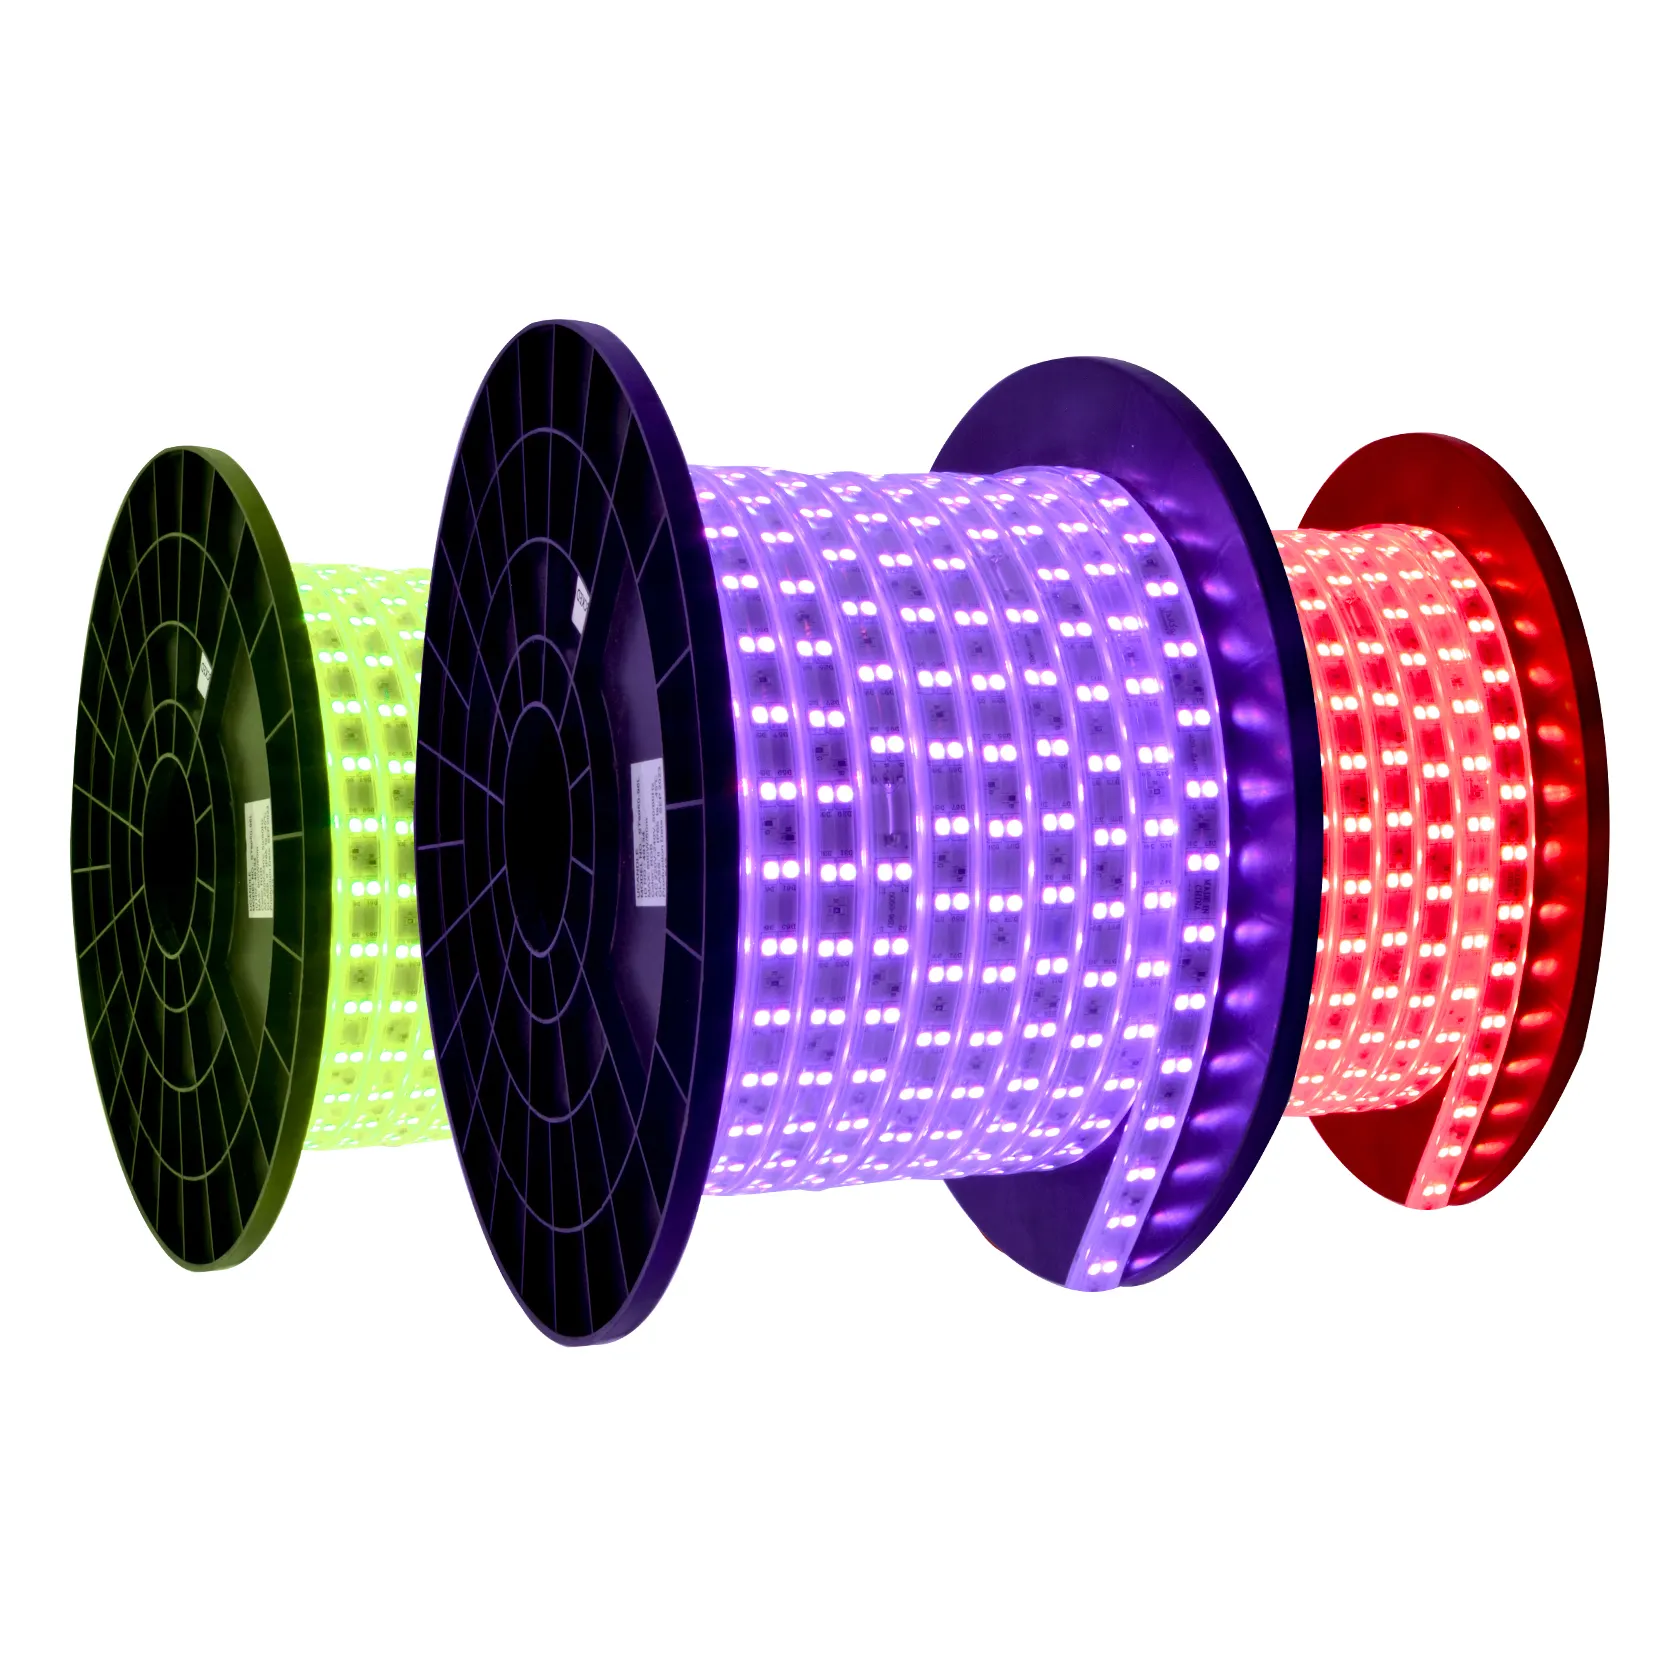 شريط إضاءة ملون بألوان RGB Led مضاد للماء Ip65 بعرض 12 ملم ومخرج 10 واط 220 فولت شريط إضاءة Led 5050 Rgb